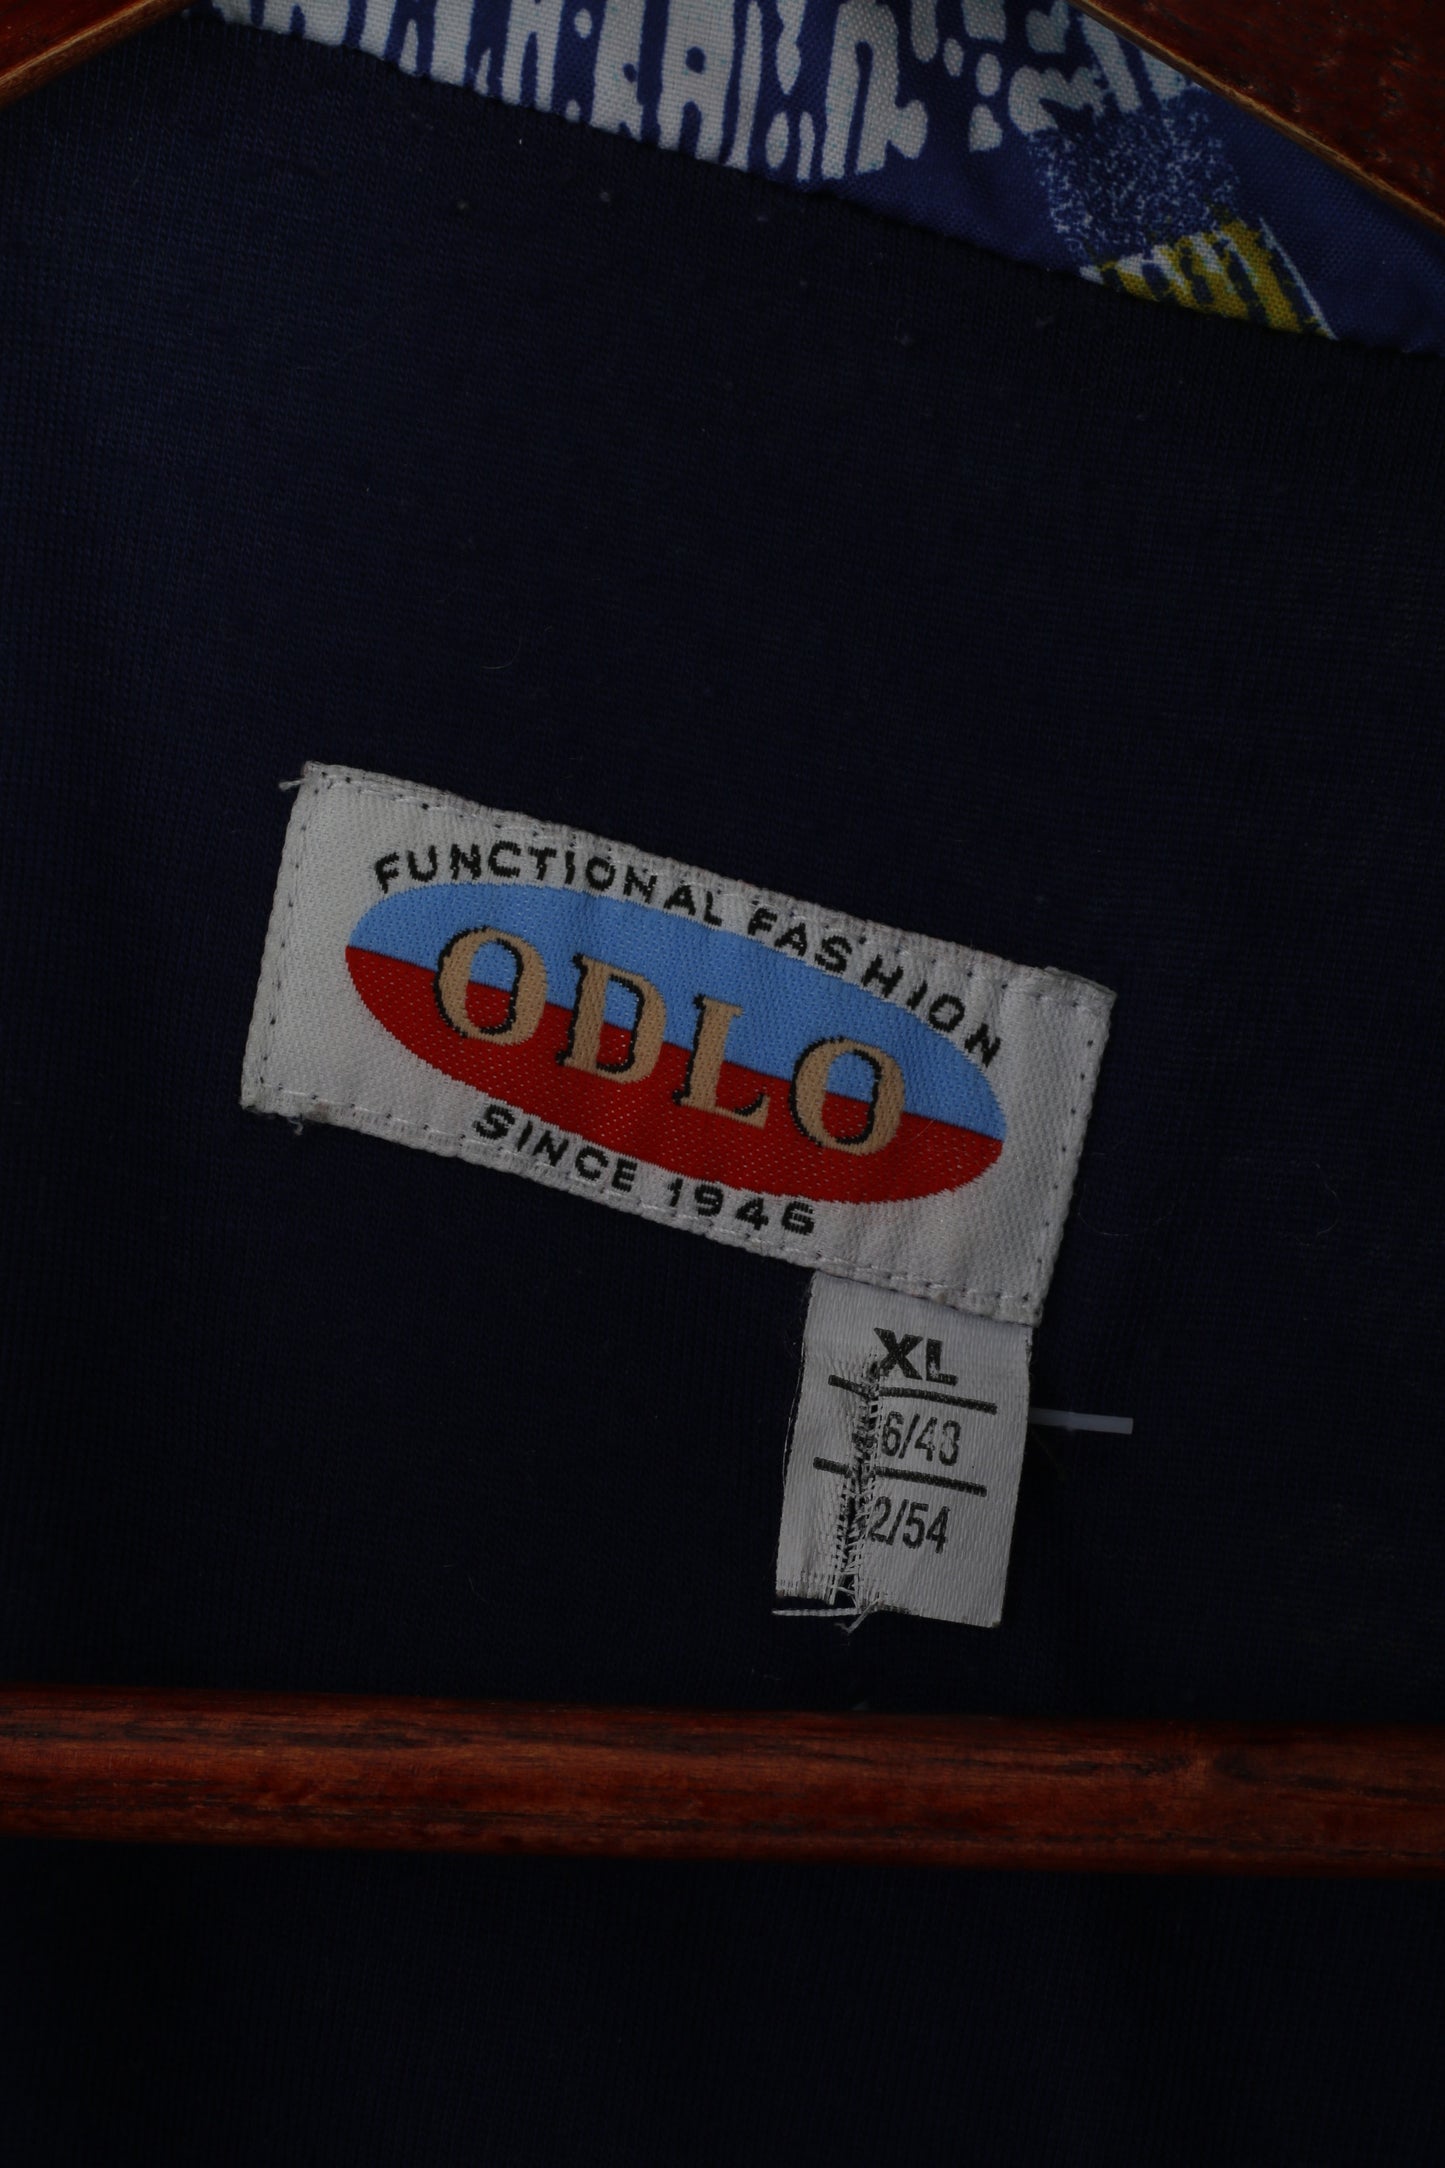 Odlo Men XL Pullover Jacket Blue Printed Zip Neck Vintage Bomber Sport Top